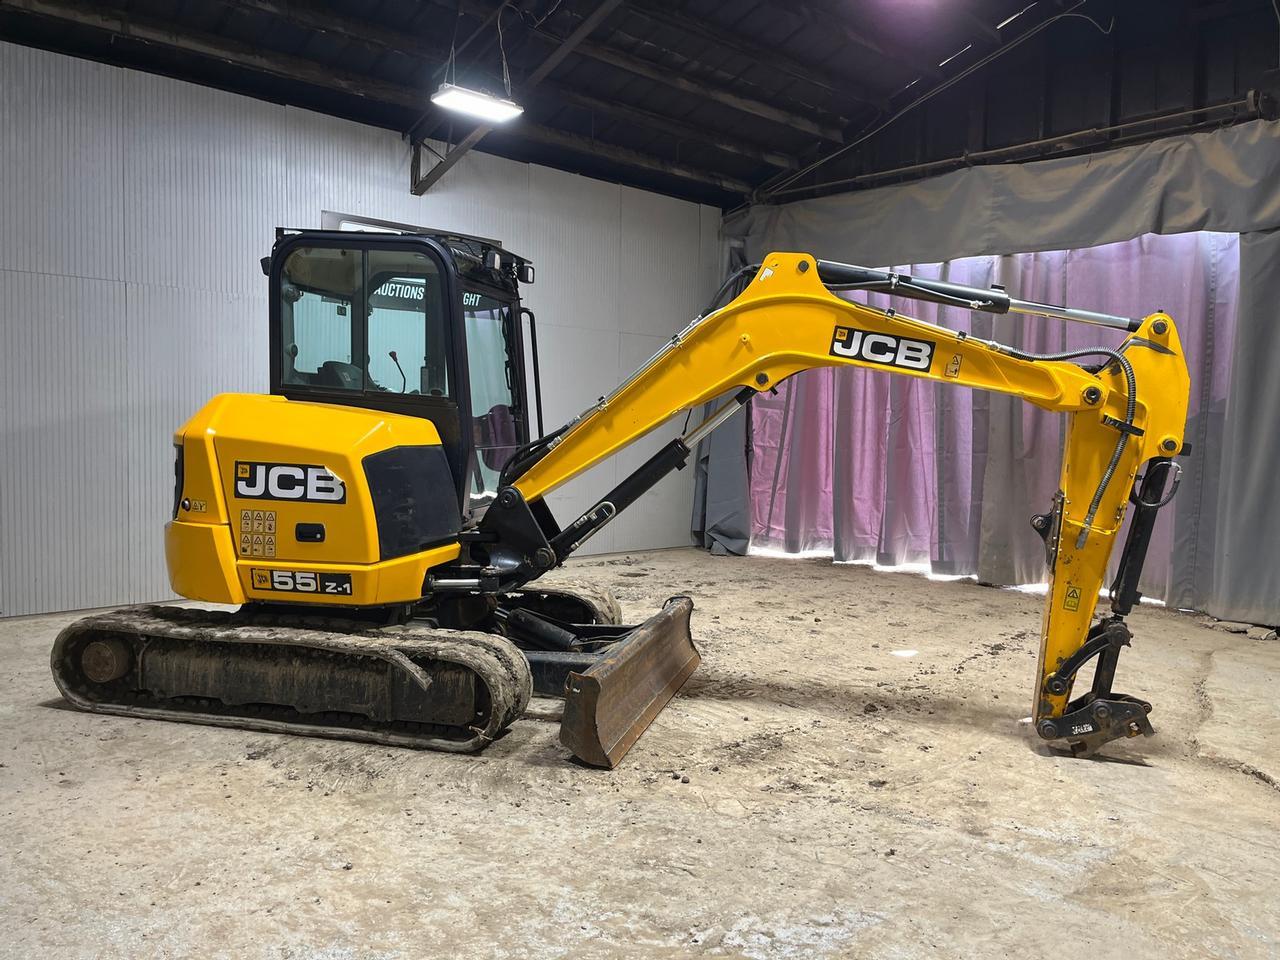 2018 JCB 55Z-1 Mini Excavator